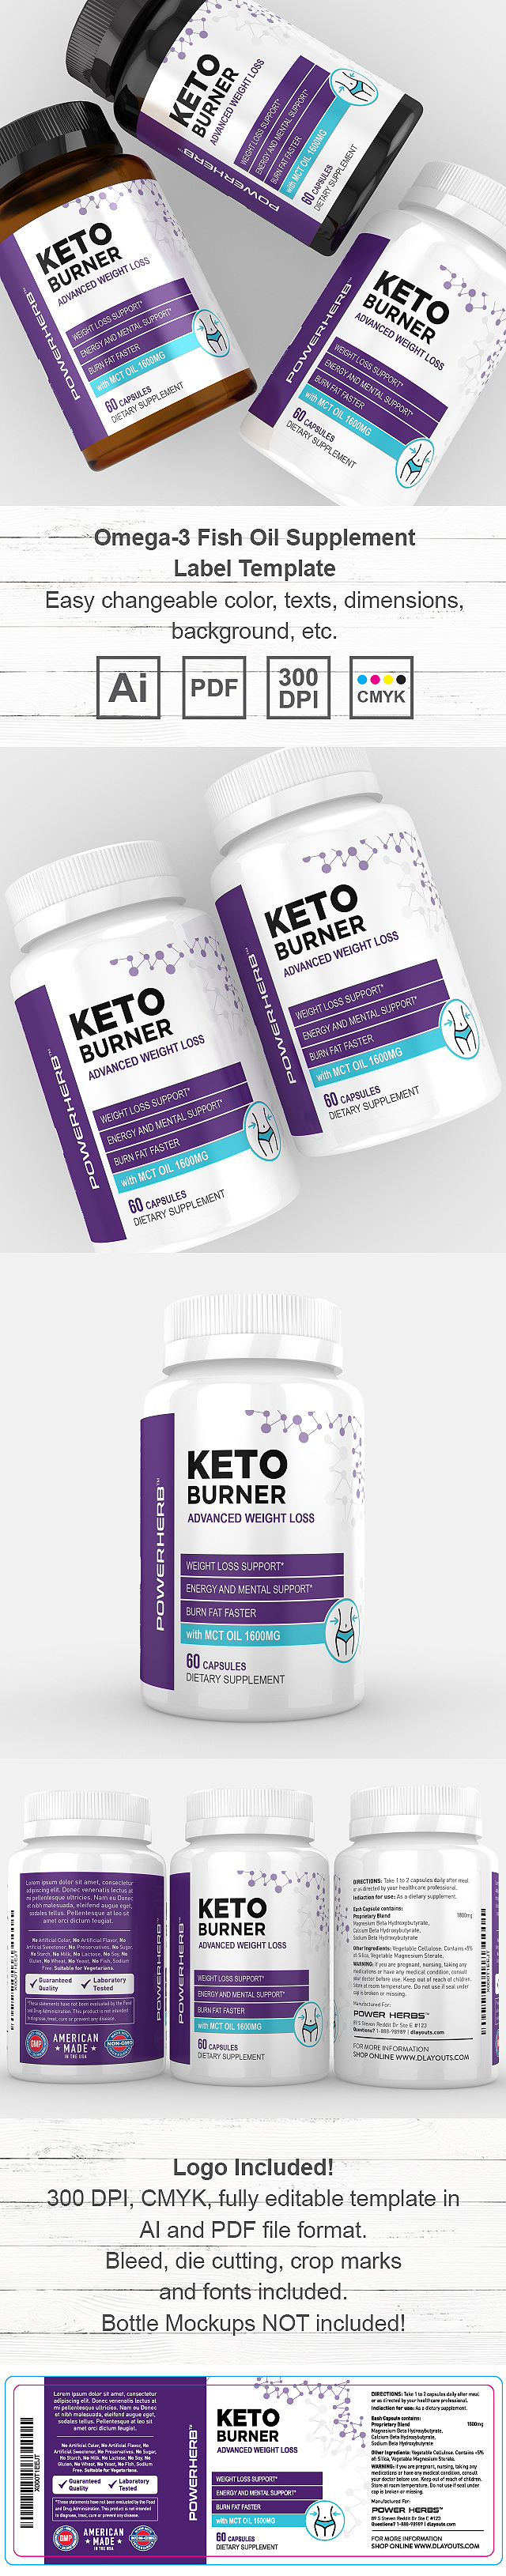 Keto Fat Burner Supplement Label Template